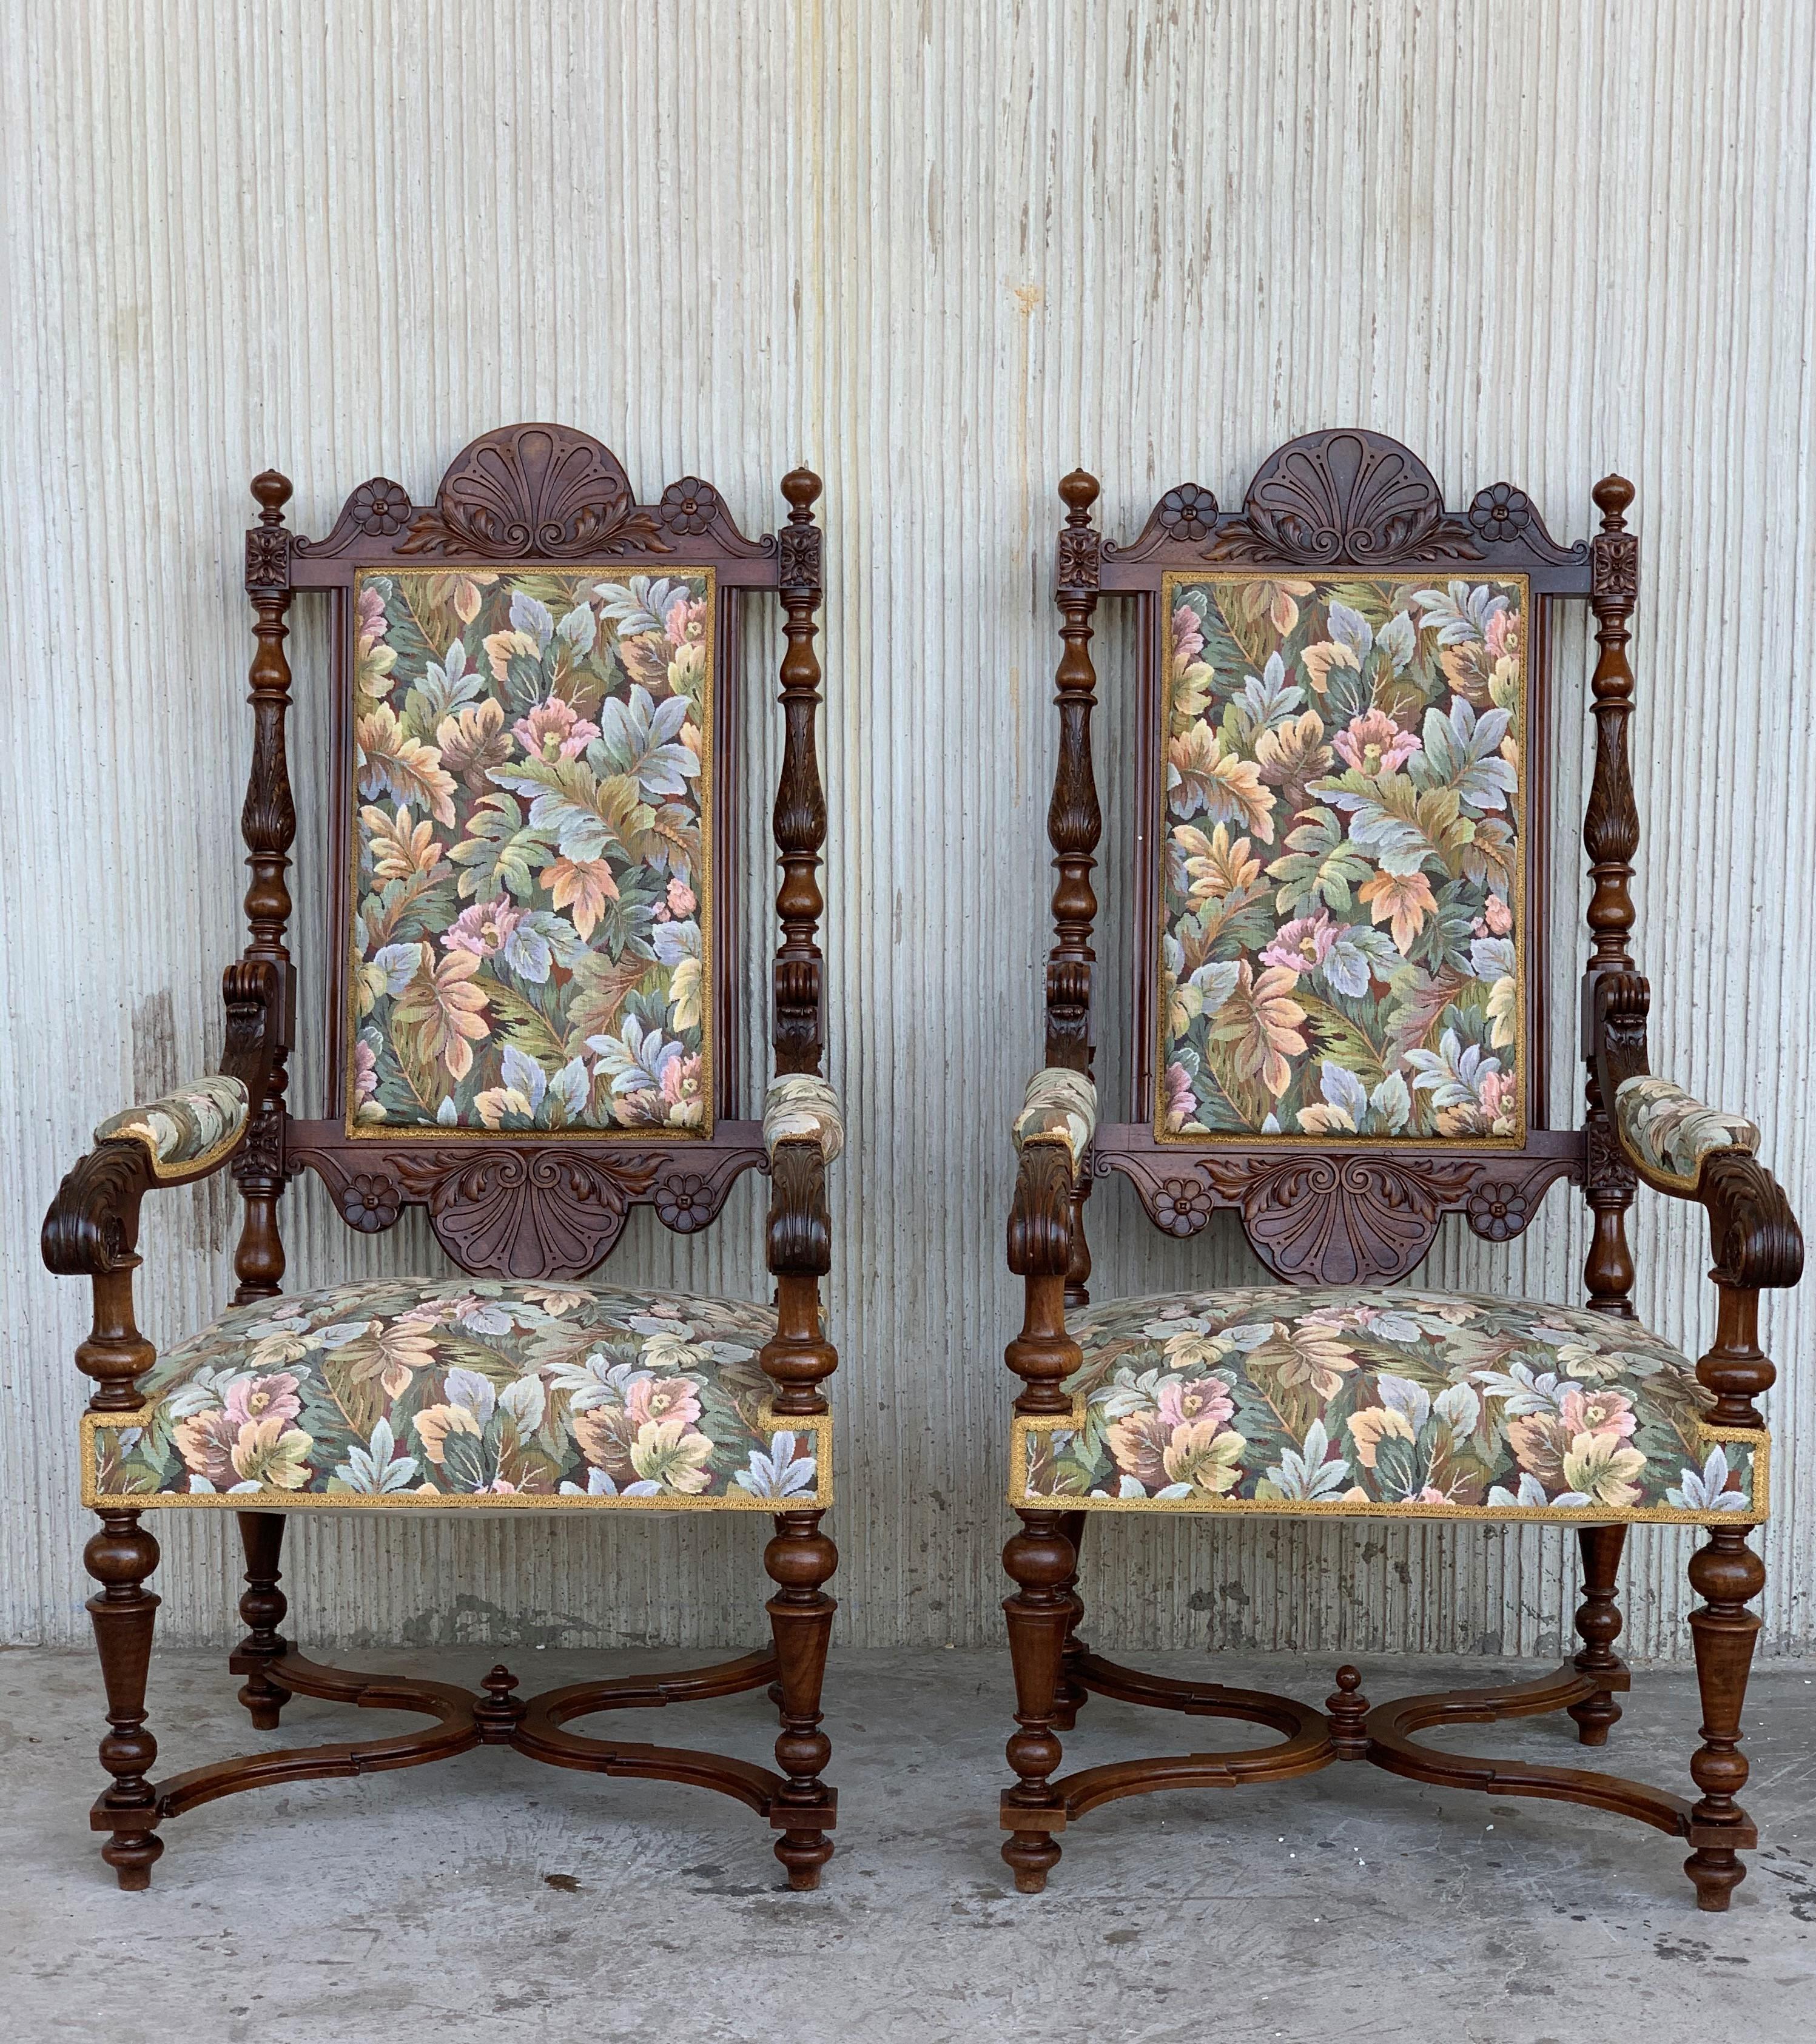 Paire de fauteuils sculptés de style Louis XVI, Espagne, années 1900
Bon état ancien avec quelques marques mineures dues à l'usage et à l'âge.
Rembourré par le dernier propriétaire avec un tissu de haute qualité, il y a 20/25 ans.

Mesure :